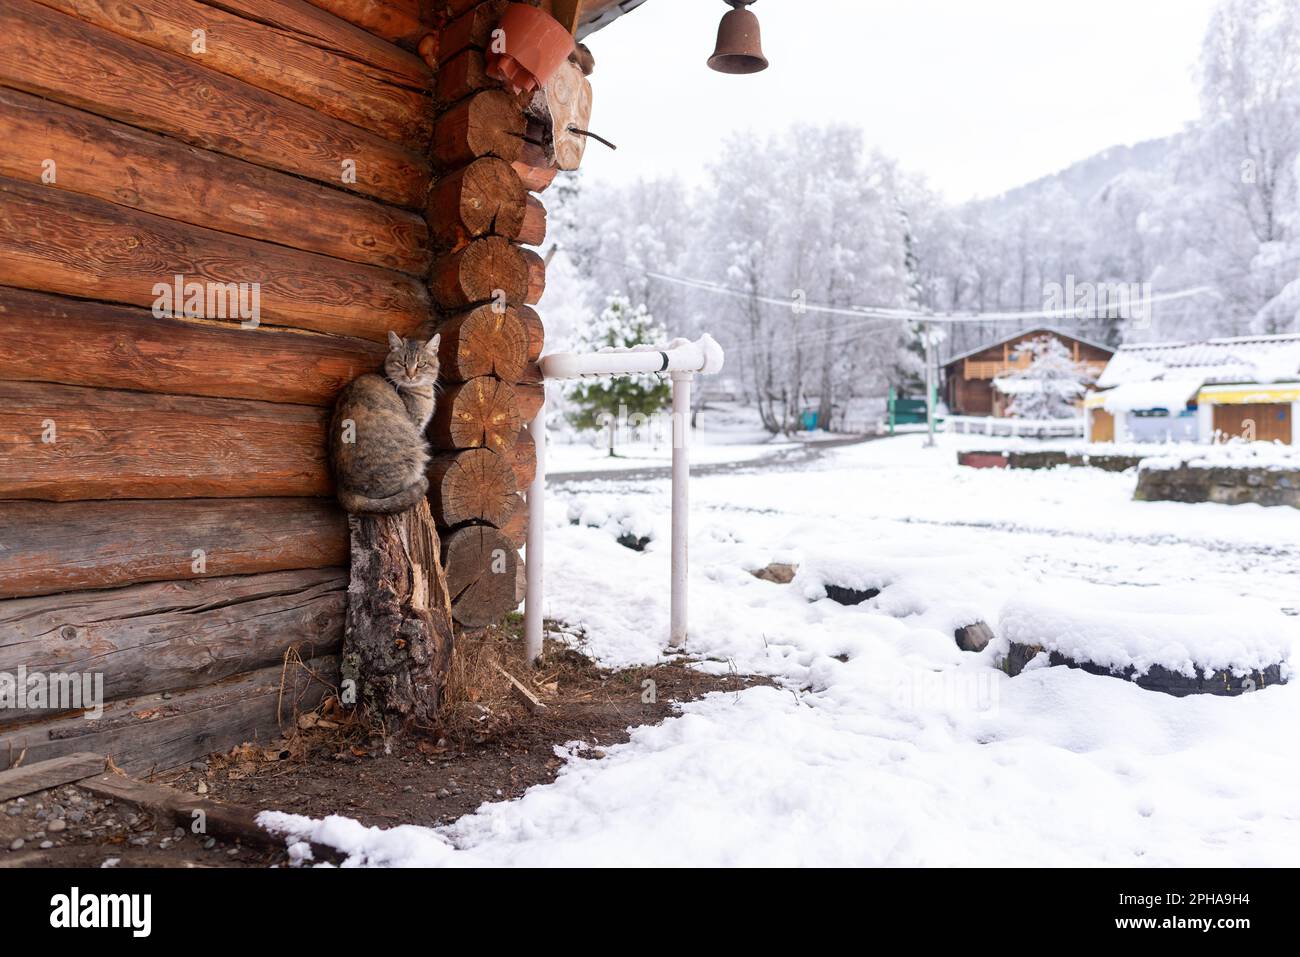 Un gatto del villaggio siede su un moncone vicino al muro di un cottage di legno con una campana sul coperchio nella neve in inverno. Foto Stock